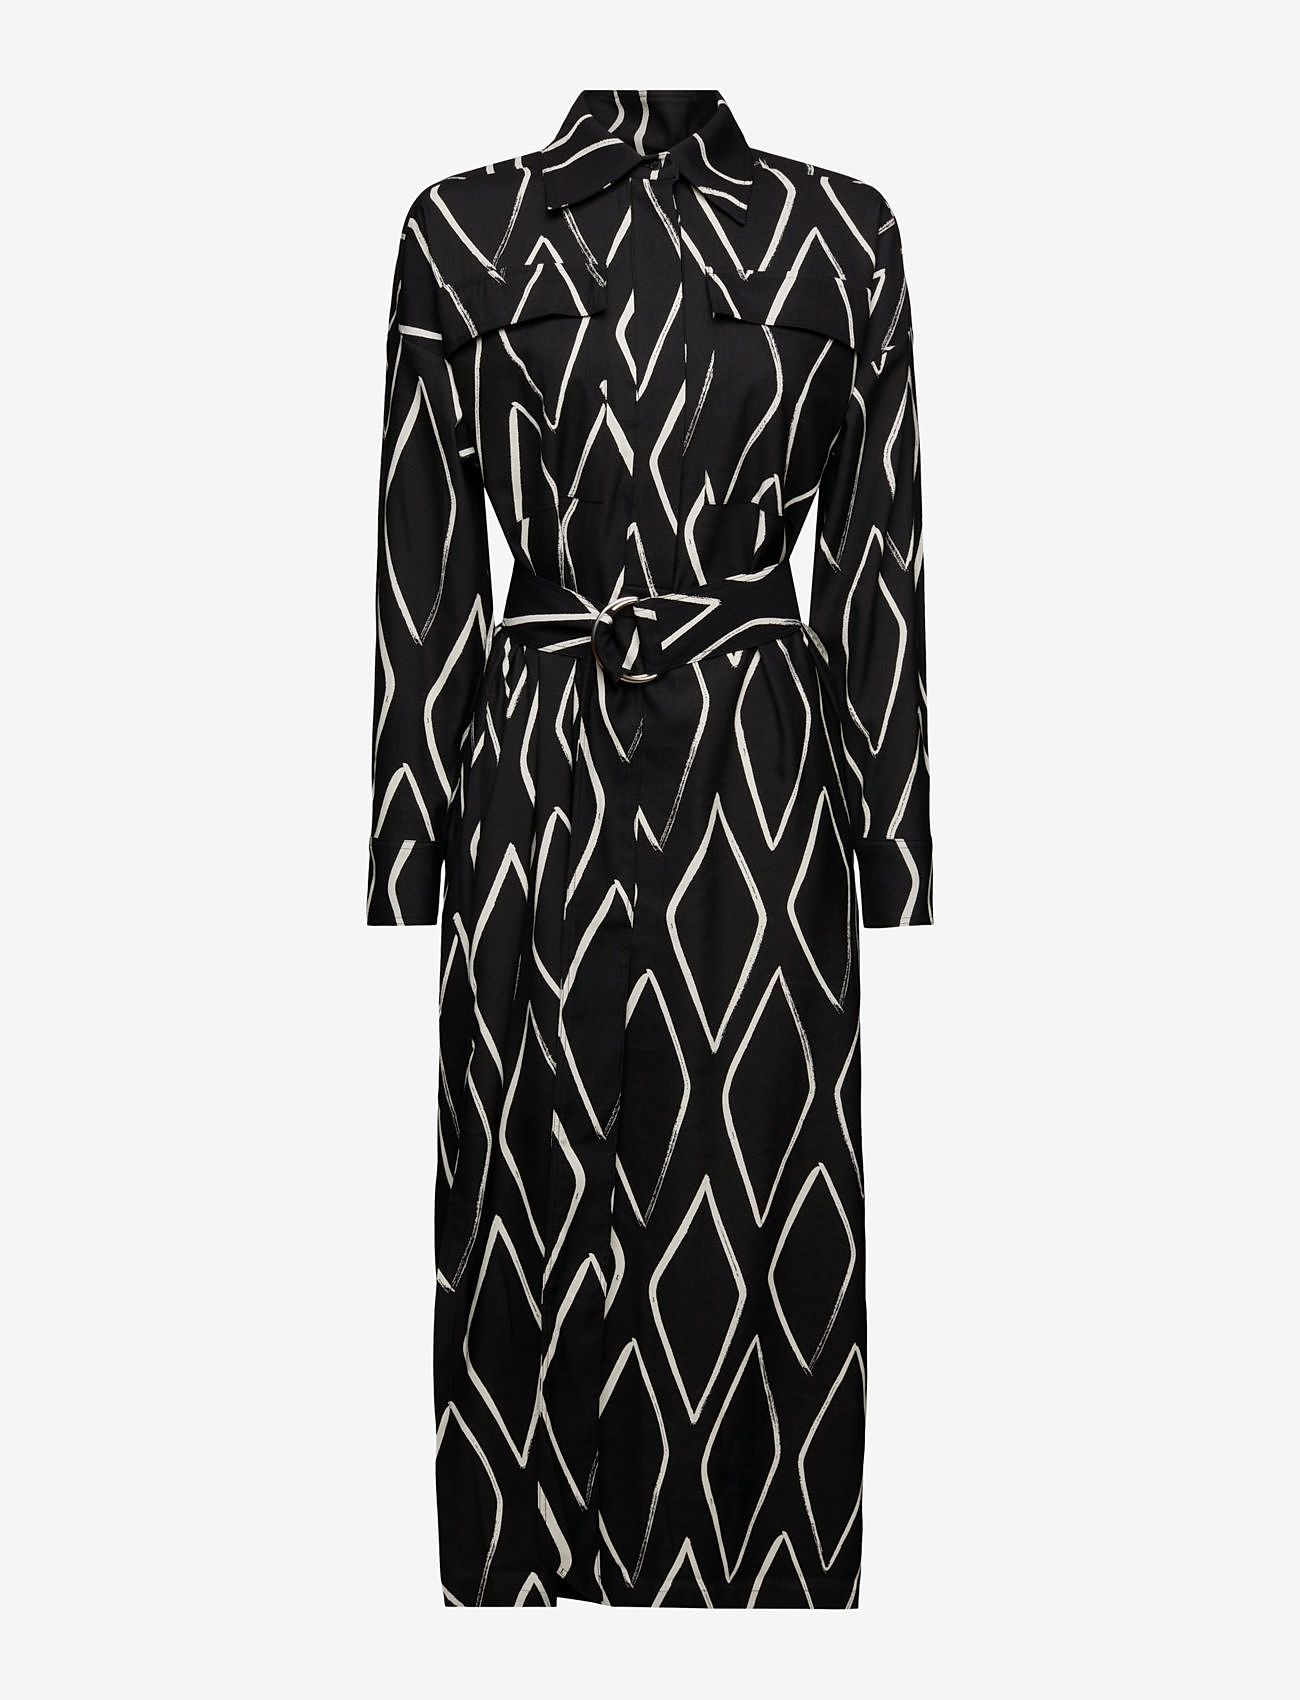 Esprit Casual - Dresses light woven - skjortekjoler - black 2 - 0